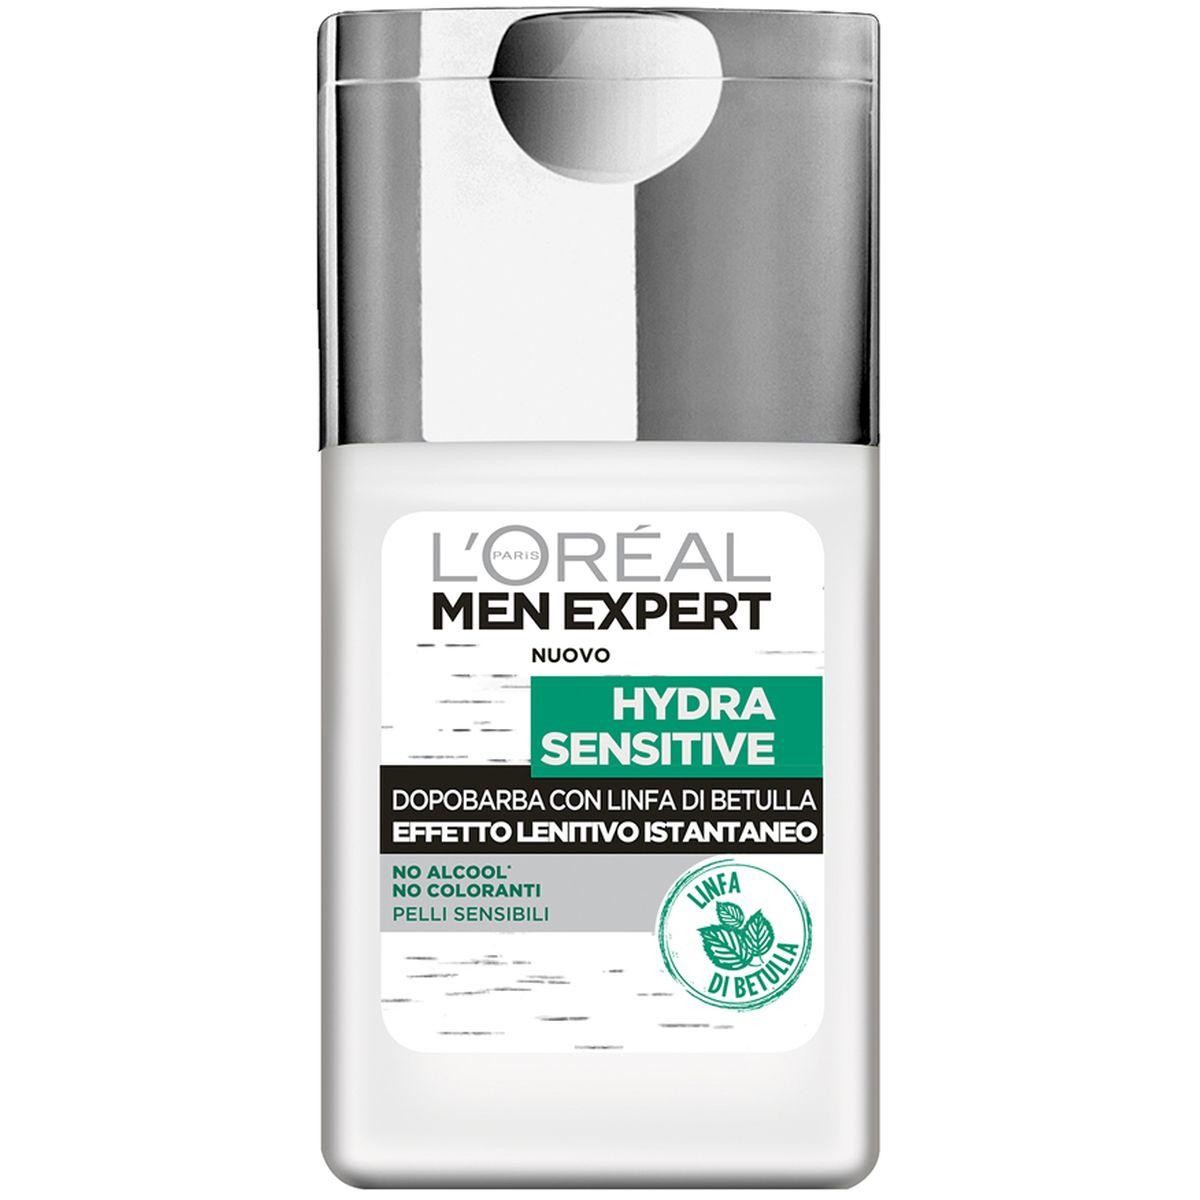 L`Oréal Paris Men Expert Hydra Sensitive lenitivo Istantaneoafter shave balm 100ml